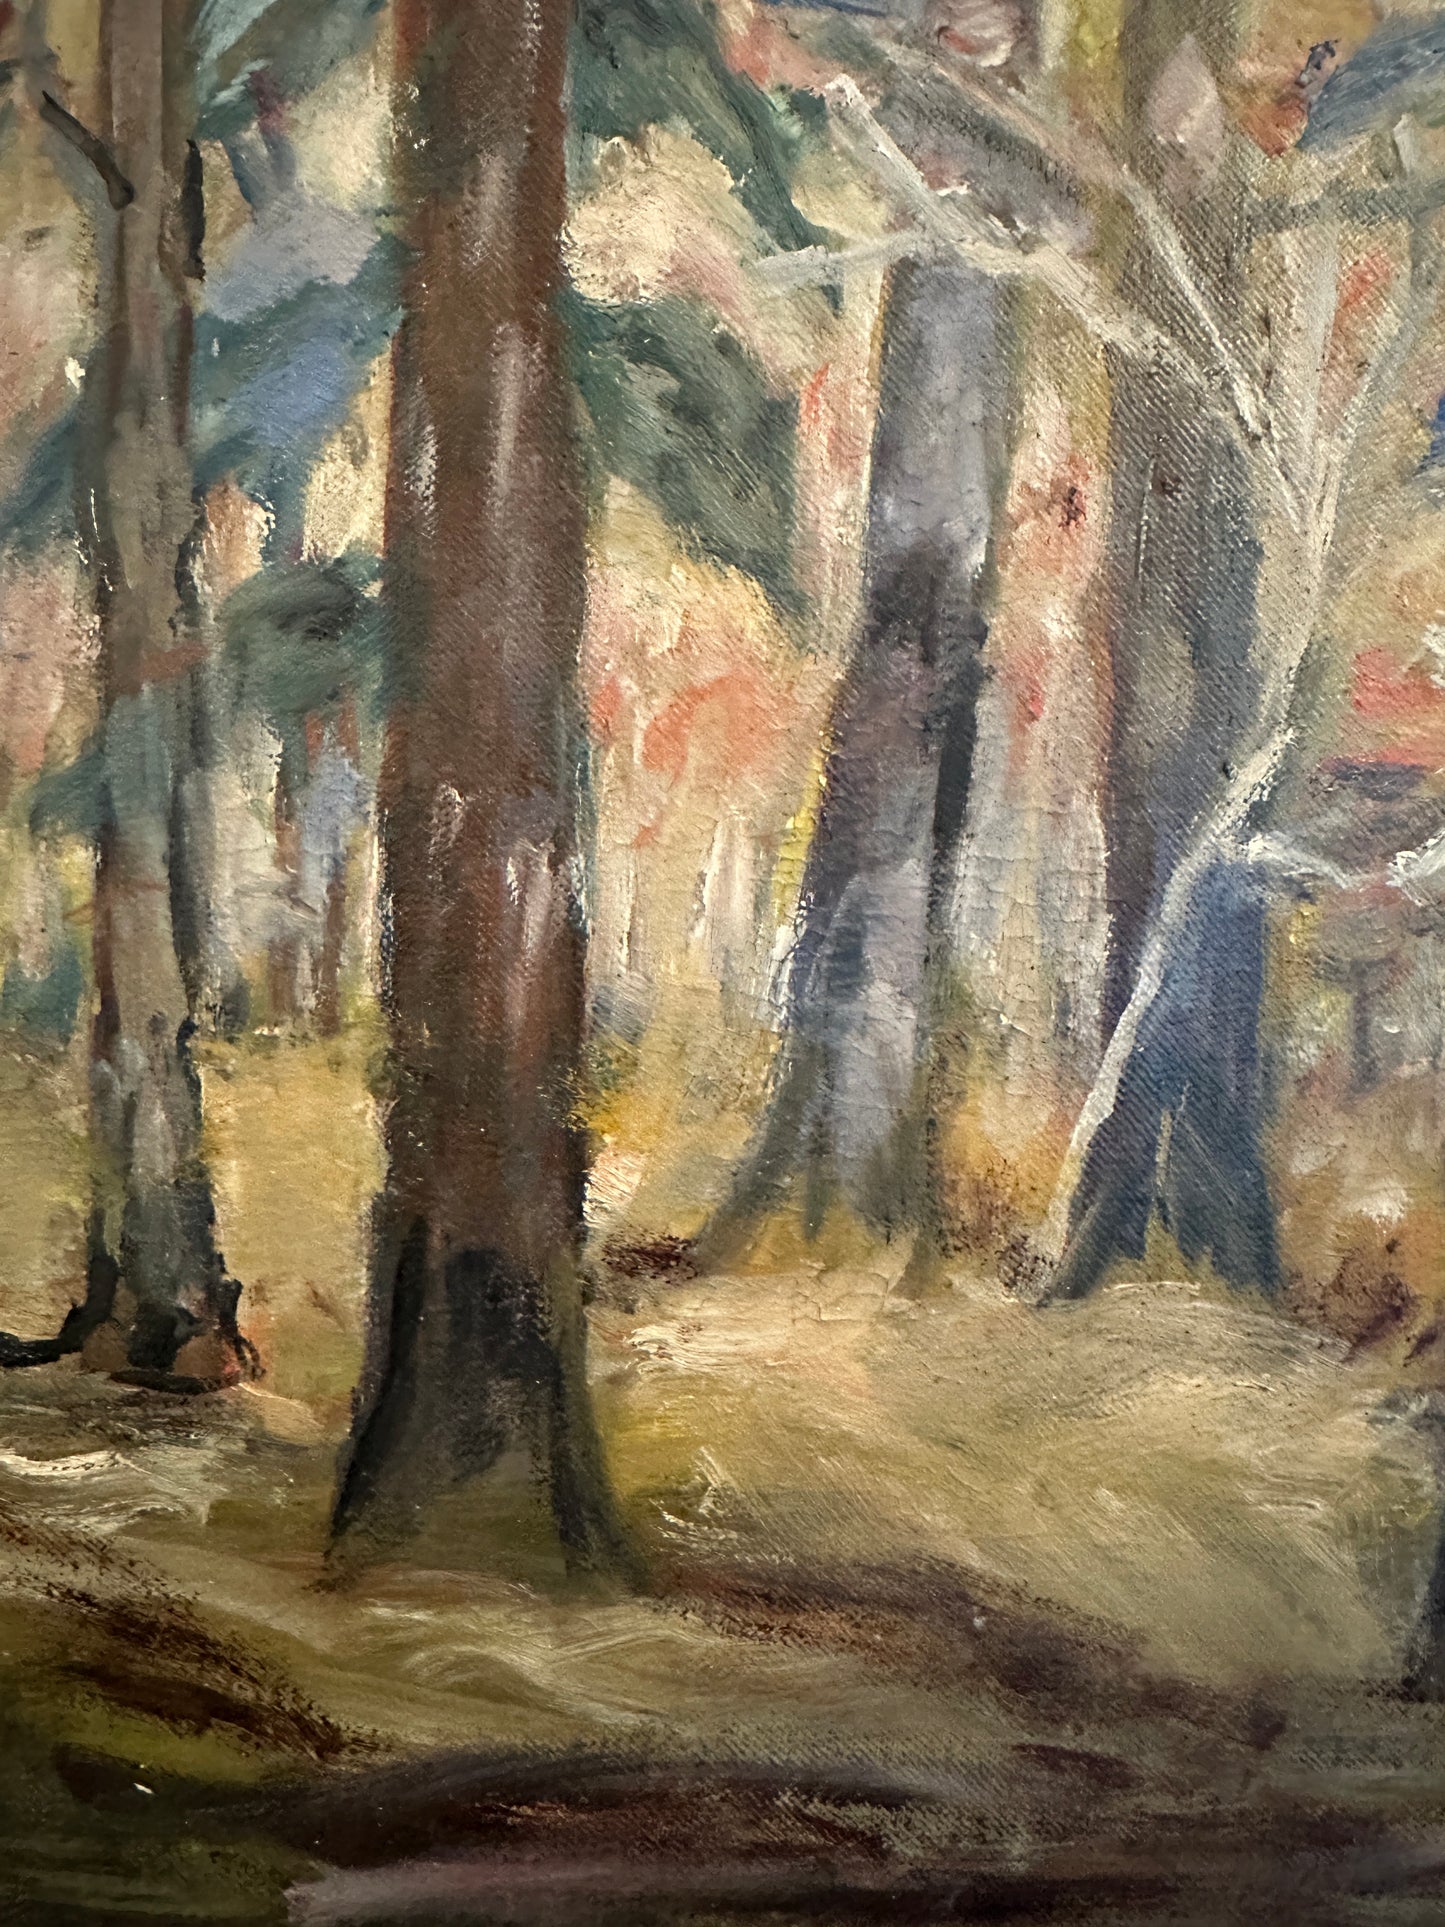 M. Herwick (XX) Ölgemälde Impressionistischer Waldblick 50x60cm